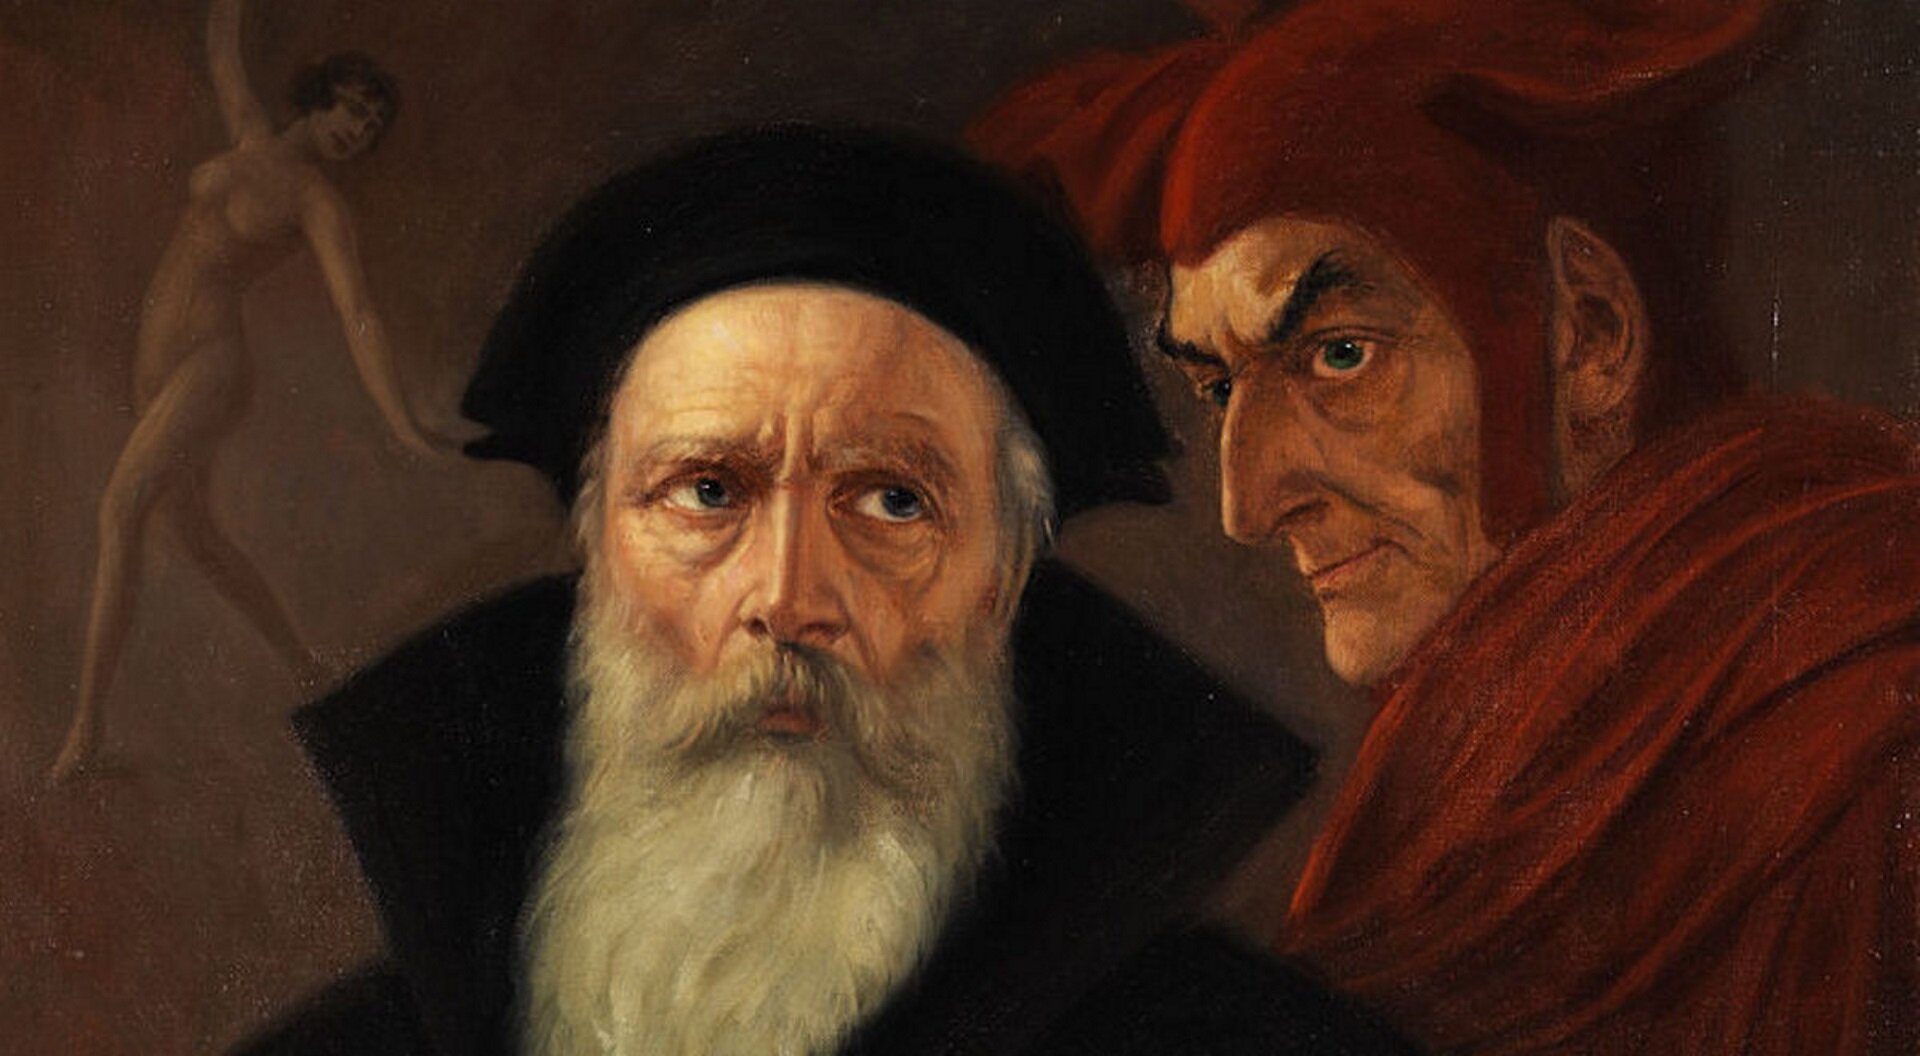 Ilustracja przedstawia obraz Antona Kaulbacha „Faust i Mefisto”. Na obrazie widzimy dwóch mężczyzn - Fausta i Mefisto. Faust to starszy mężczyzna z długą, siwą brodą. Ubrany w czarną czapkę oraz płaszcz. Mesfisto to młodszy mężczyzna. Ubrany w czerwone szaty oraz czerwoną czapkę z rogami. Na drugim planie tańczy naga kobieta, ręce uniesione ma ku górze.